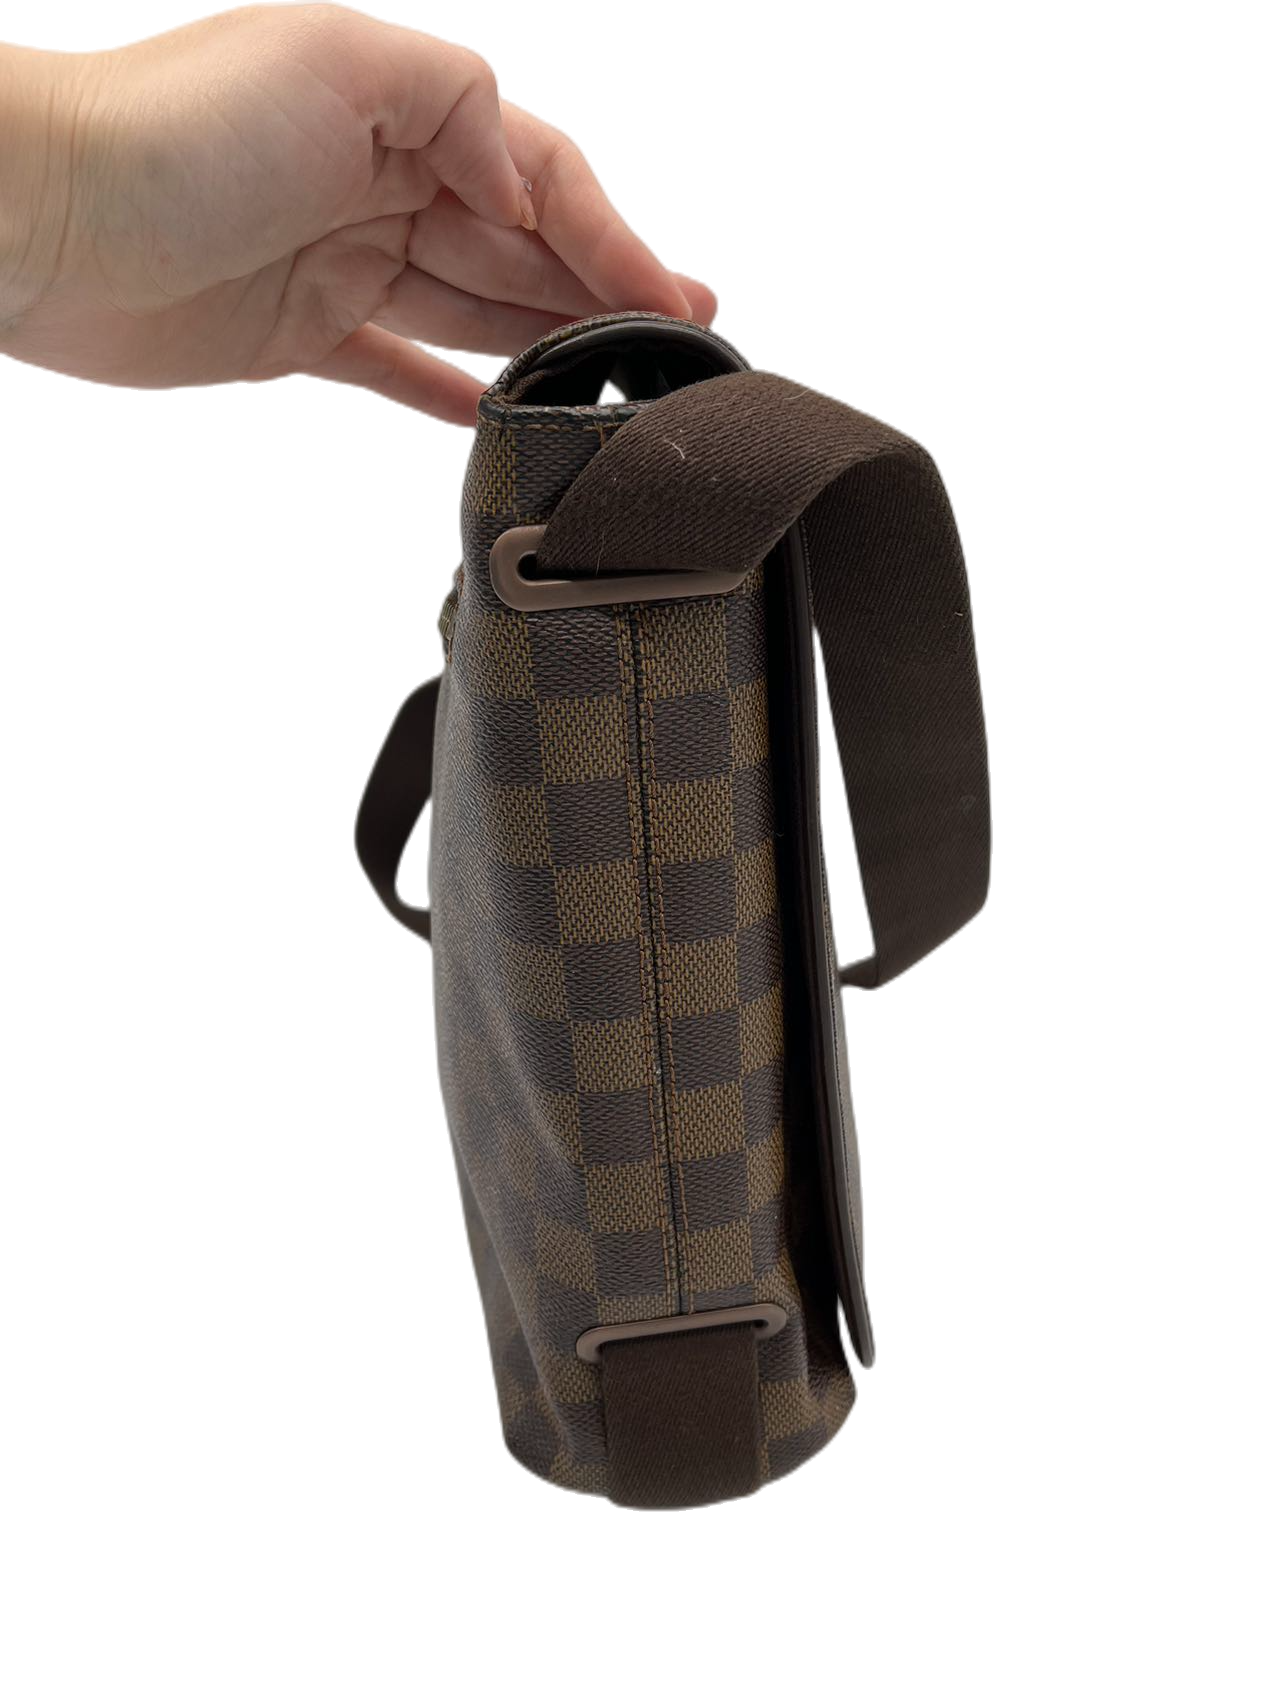 Preloved Louis Vuitton Damier Ebene Messenger Bag Crossbody